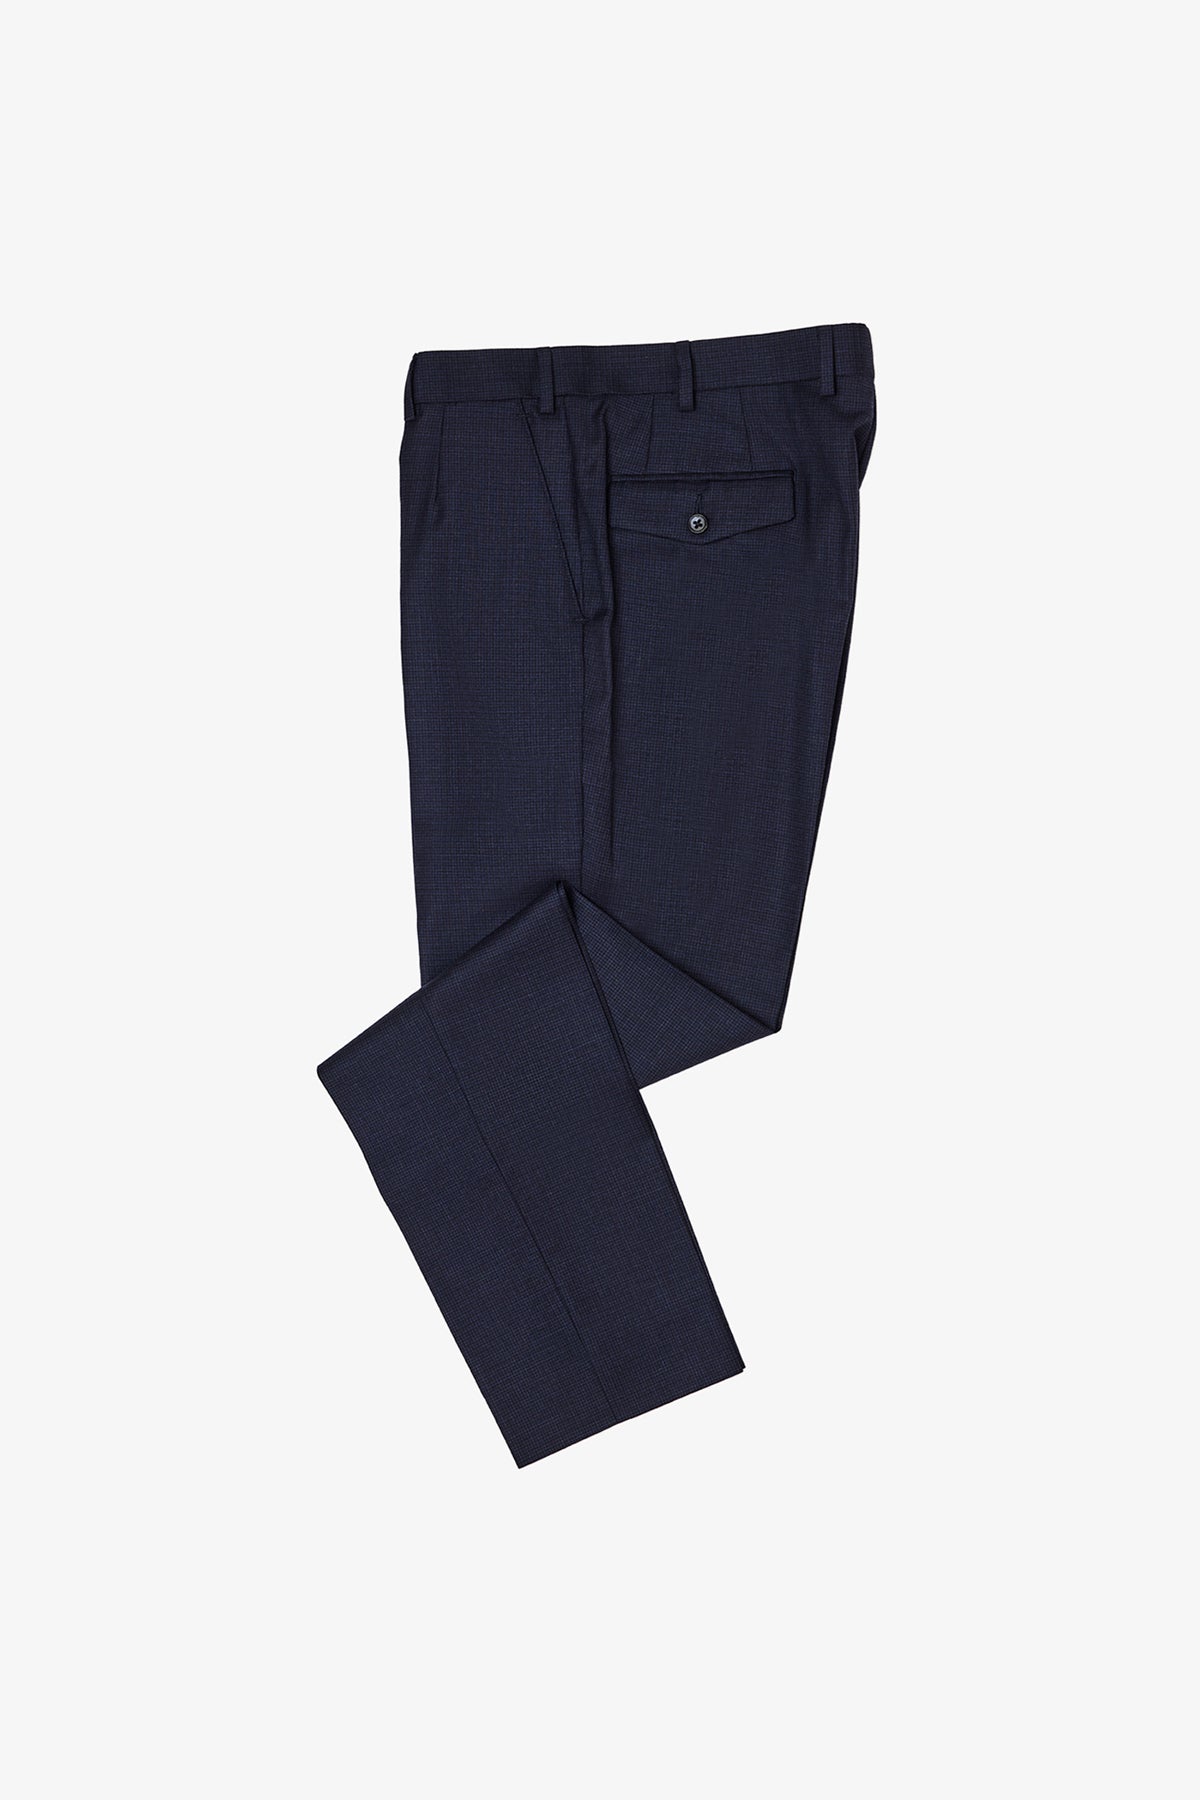 Slack - Navy Trouser